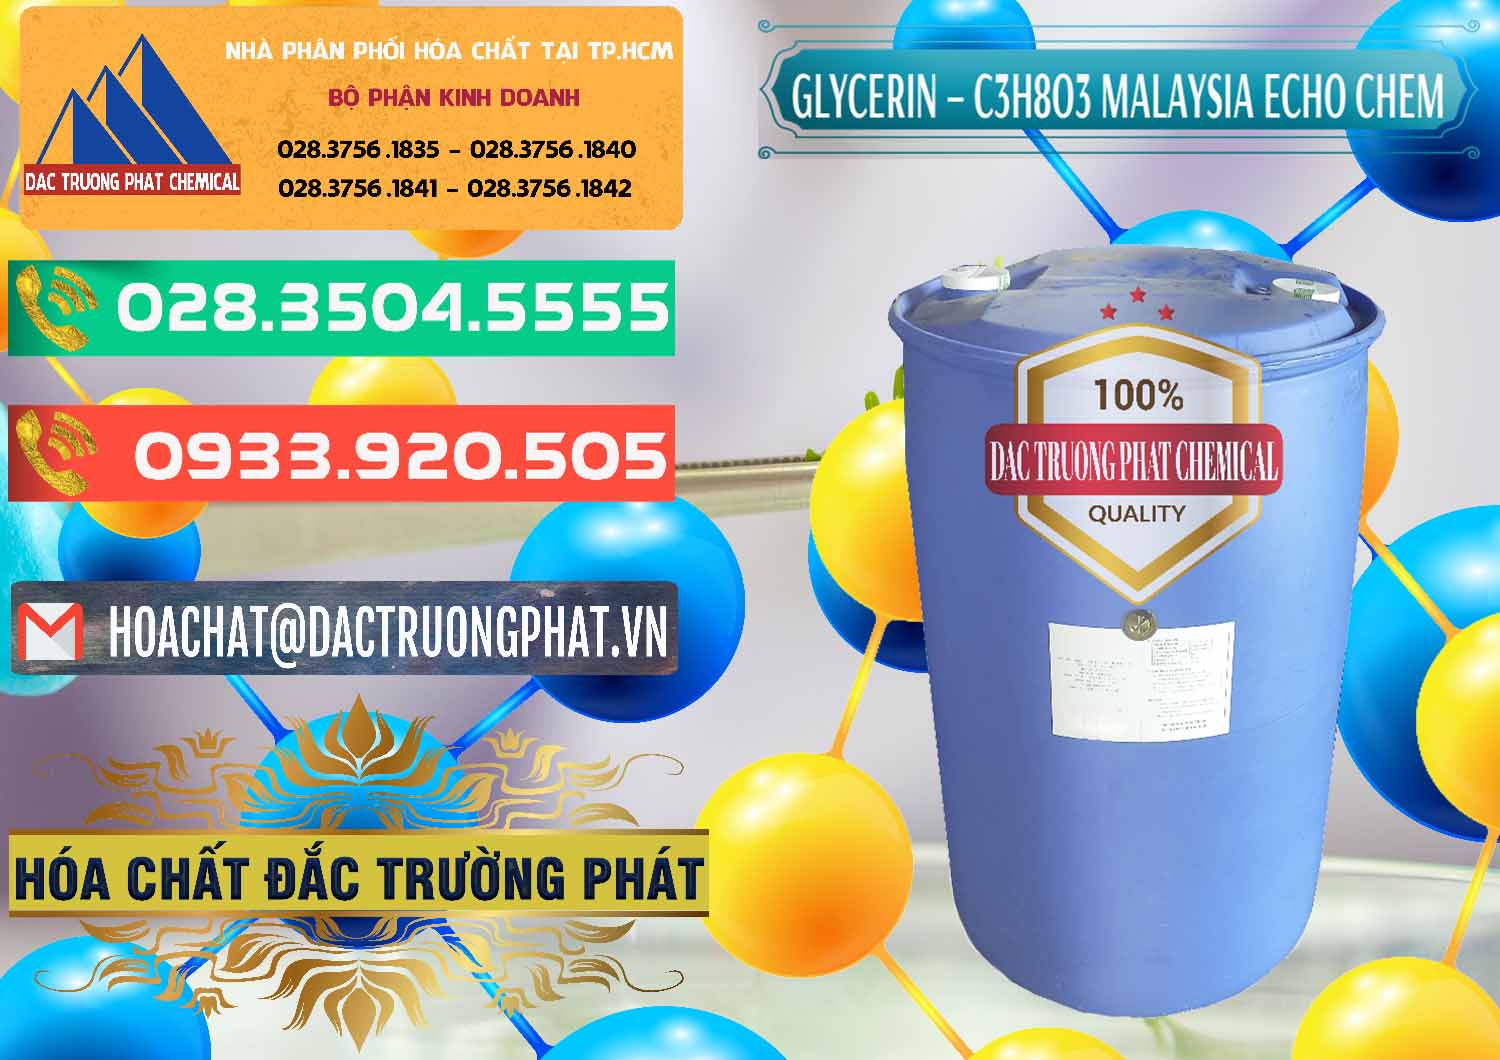 Nơi nhập khẩu ( bán ) Glycerin – C3H8O3 99.7% Echo Chem Malaysia - 0273 - Chuyên phân phối & nhập khẩu hóa chất tại TP.HCM - congtyhoachat.com.vn